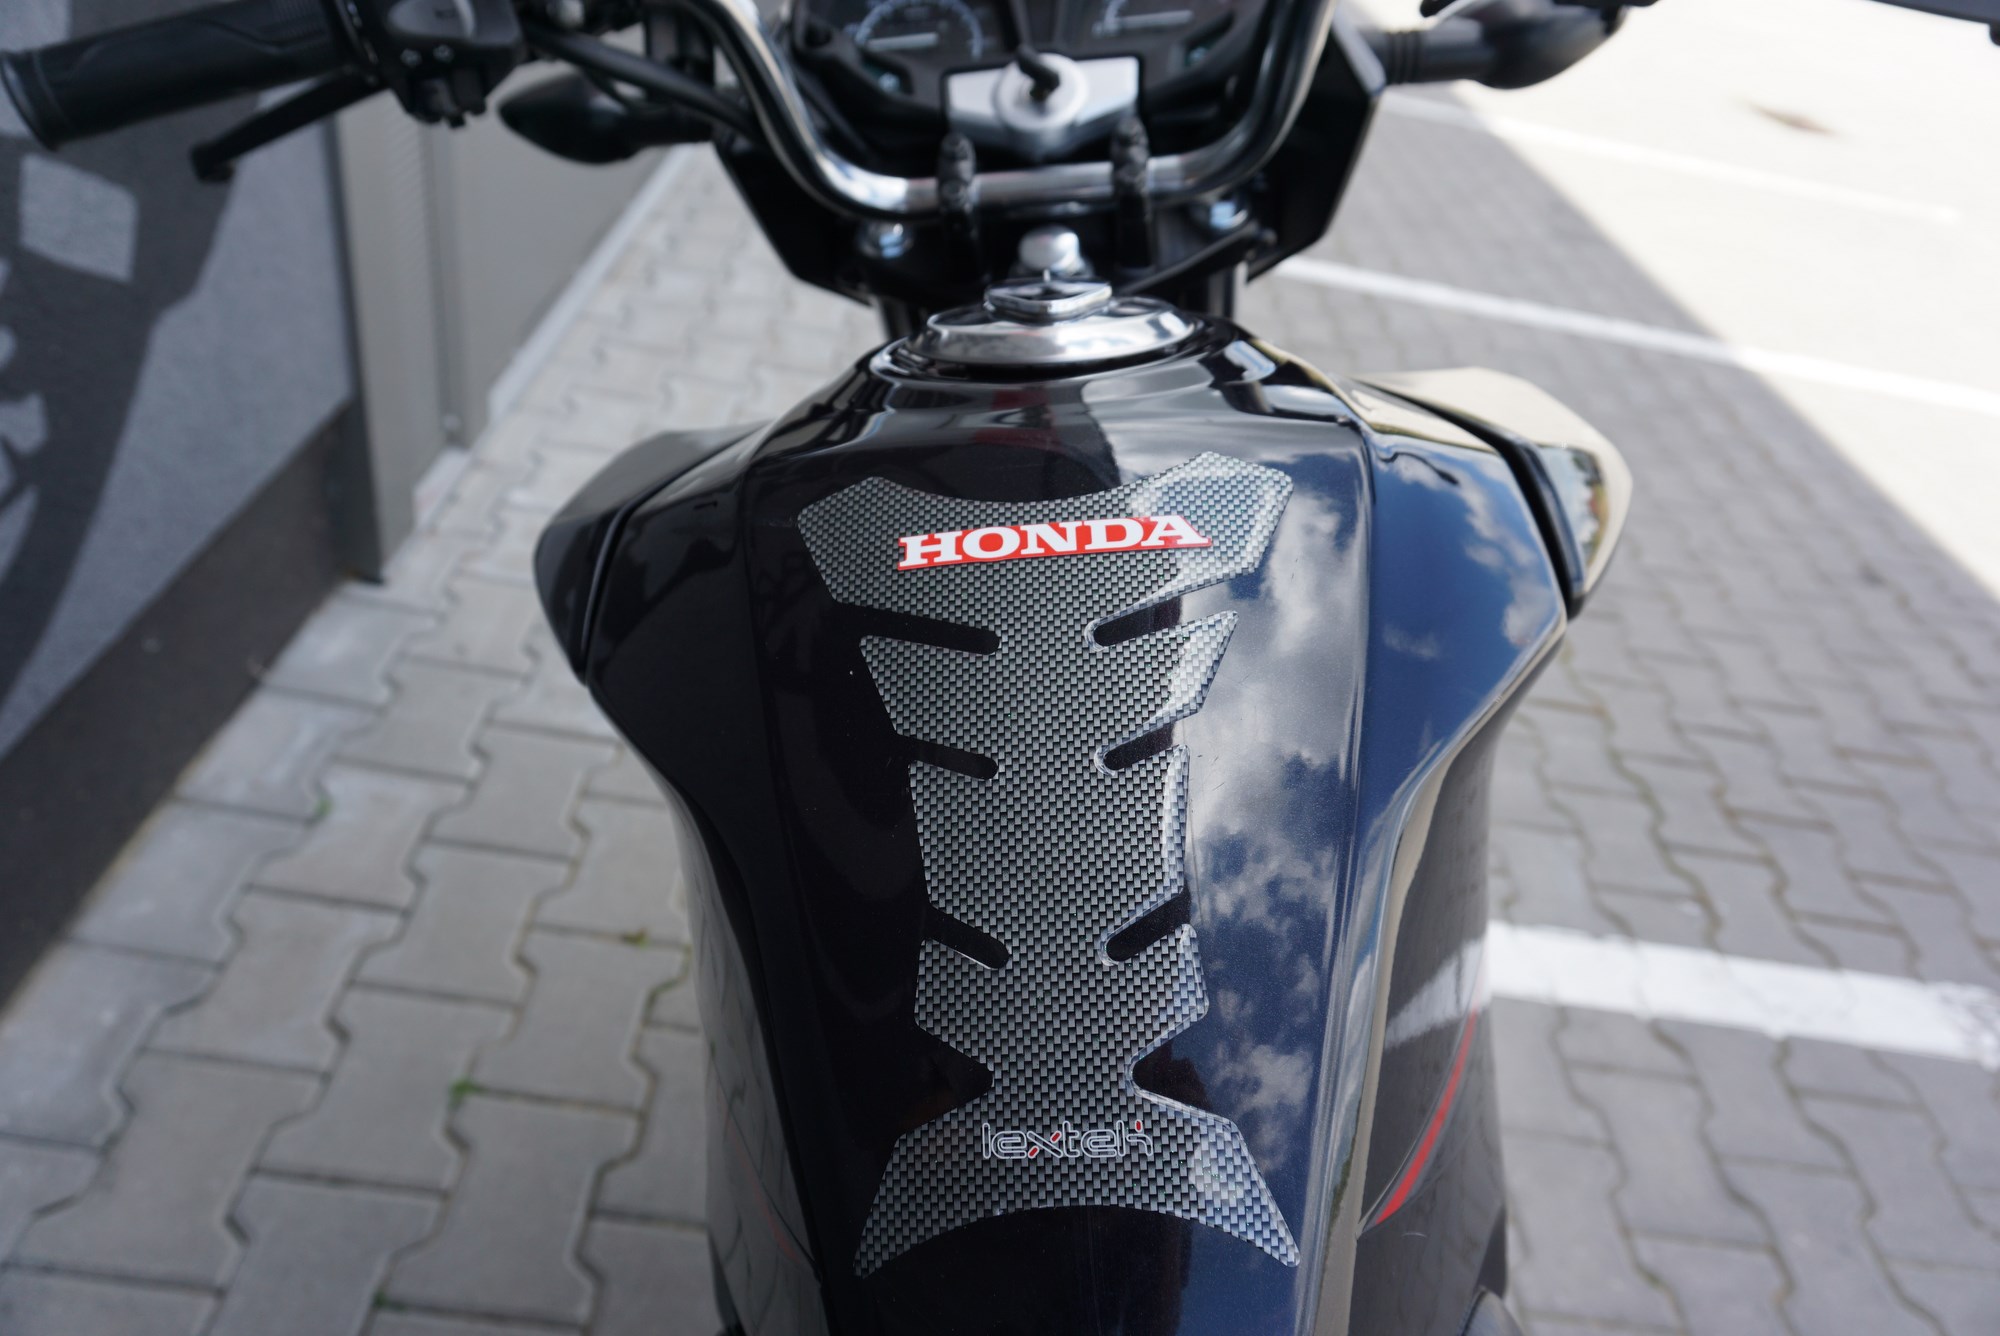 Honda CB 125 F